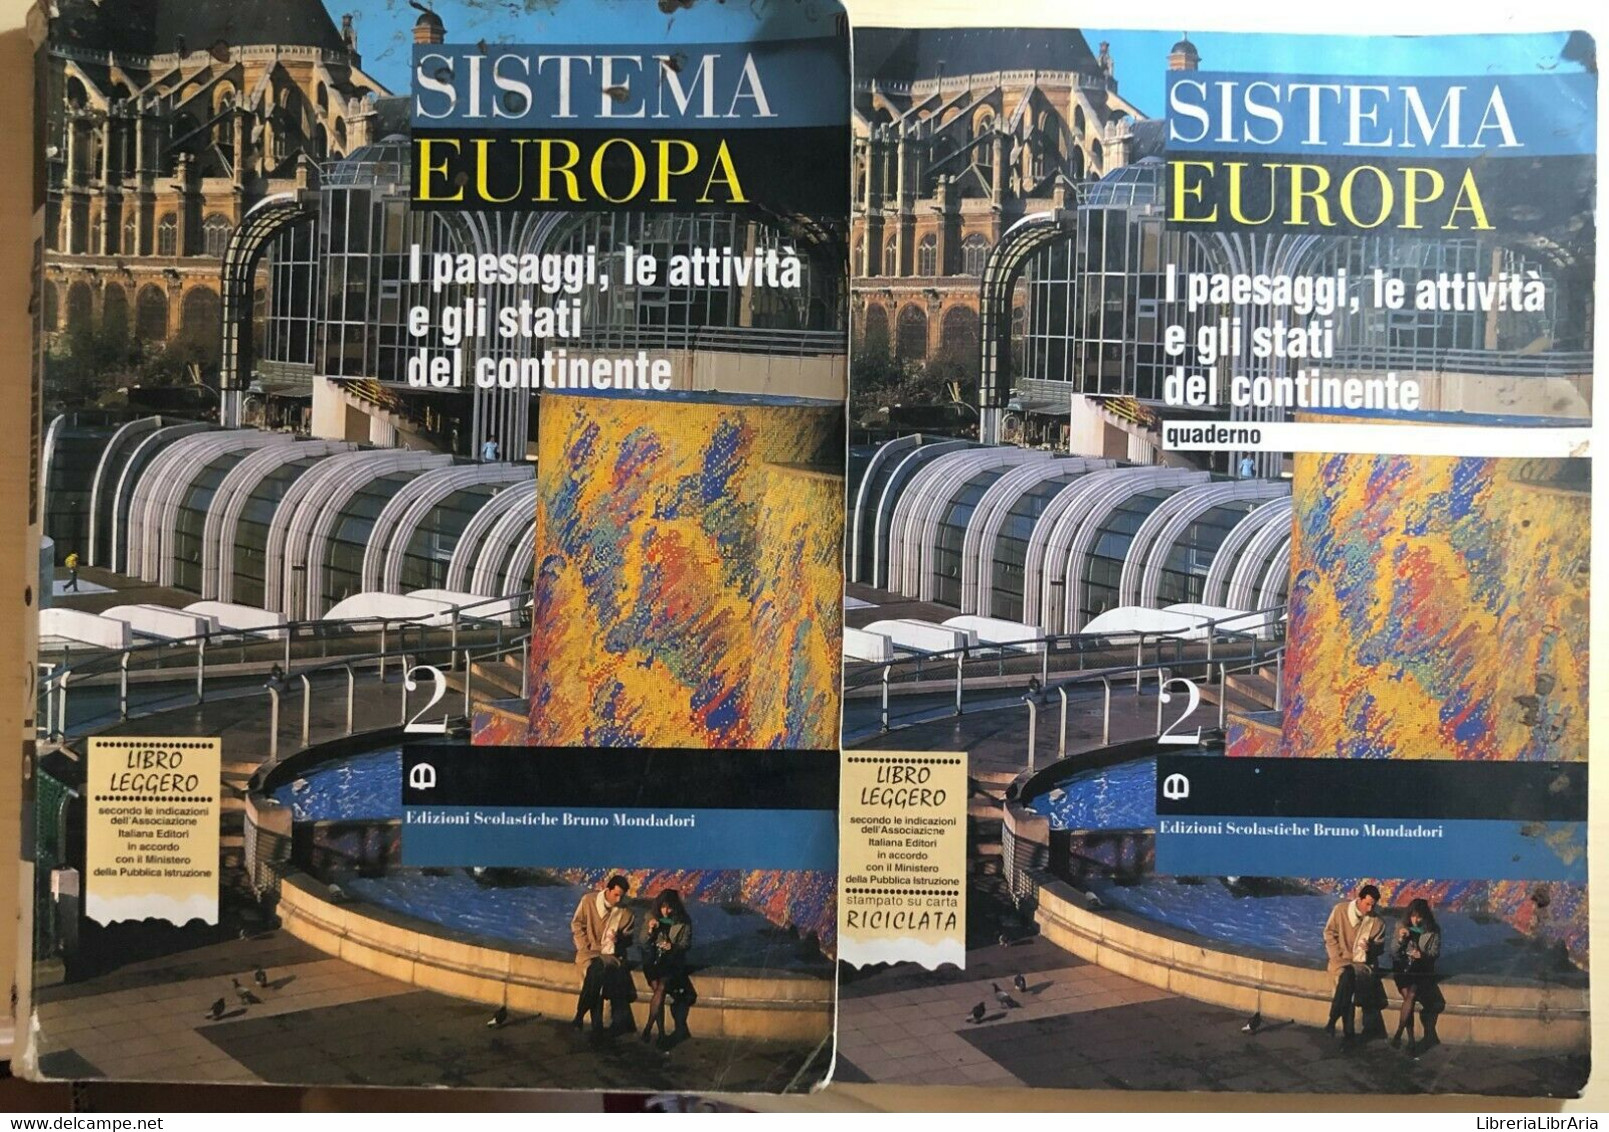 Sistema Europa 2+quaderno Di Aa.vv., 1995, Edizioni Scolastiche Bruno Mondadori - Teenagers